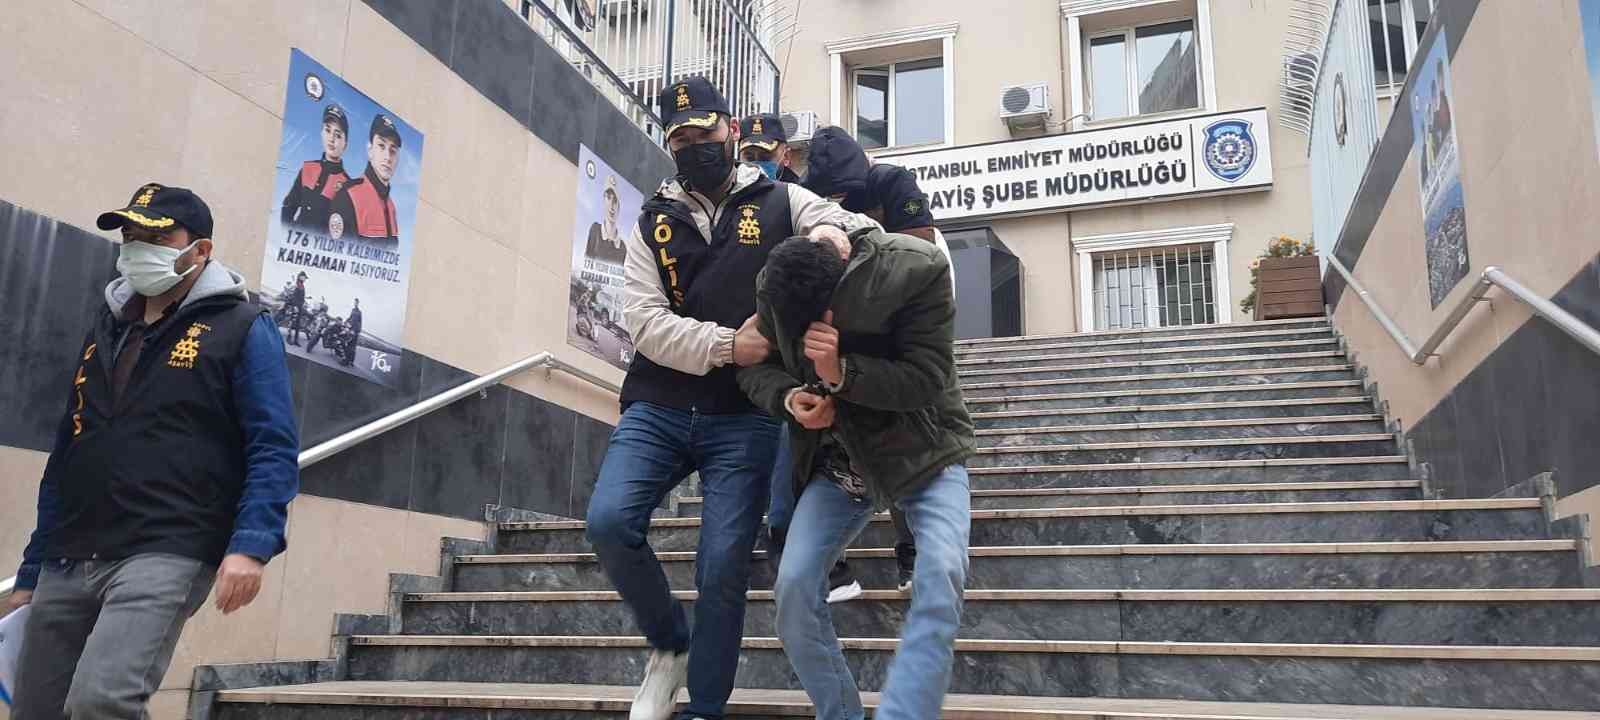 Kapıyı taş ve tekmeyle kırarak içeri giren hırsızlar kamerada #istanbul